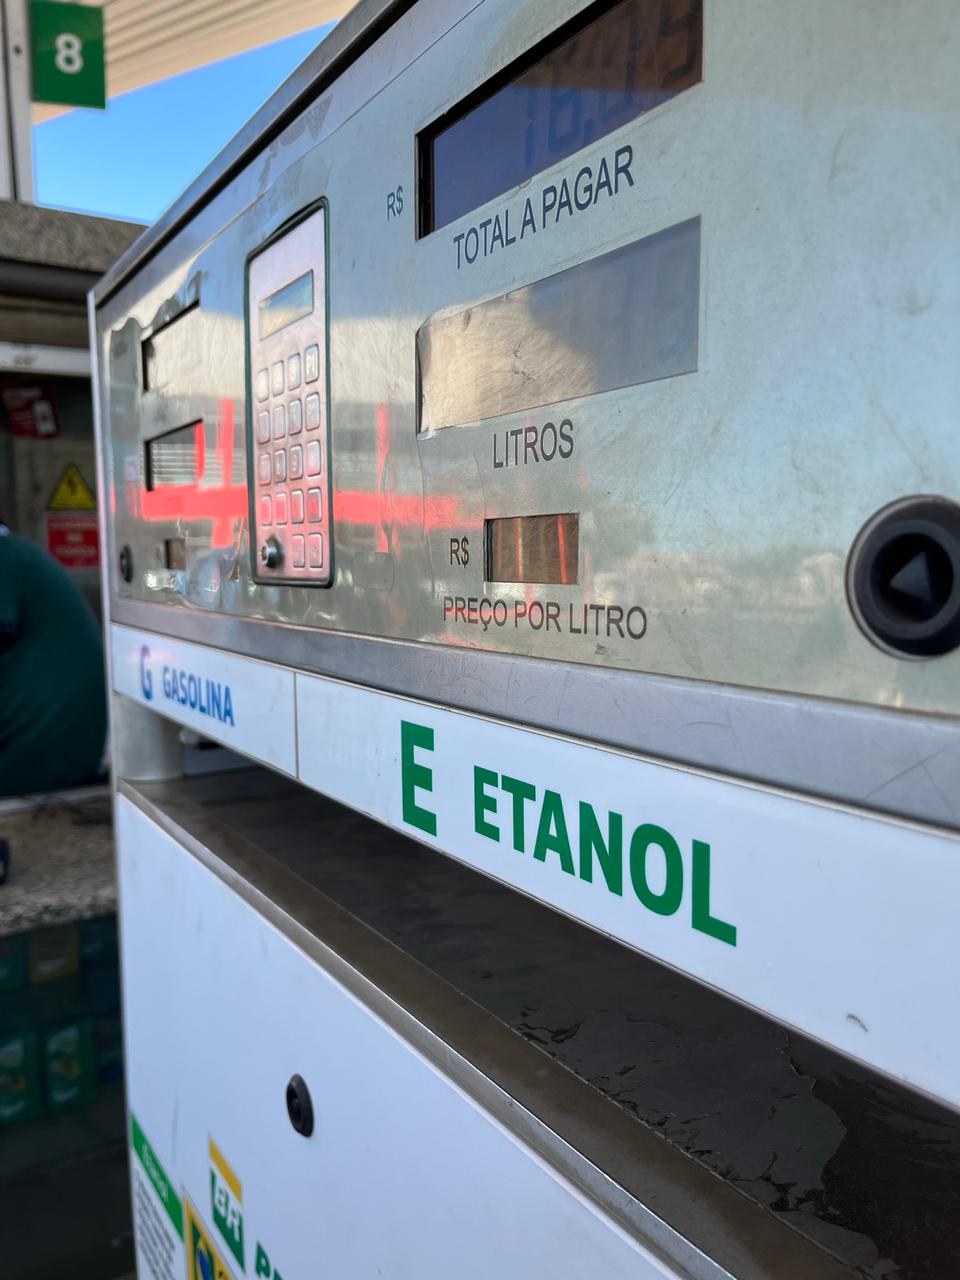 O etanol é o melhor "carregador de hidrogênio"